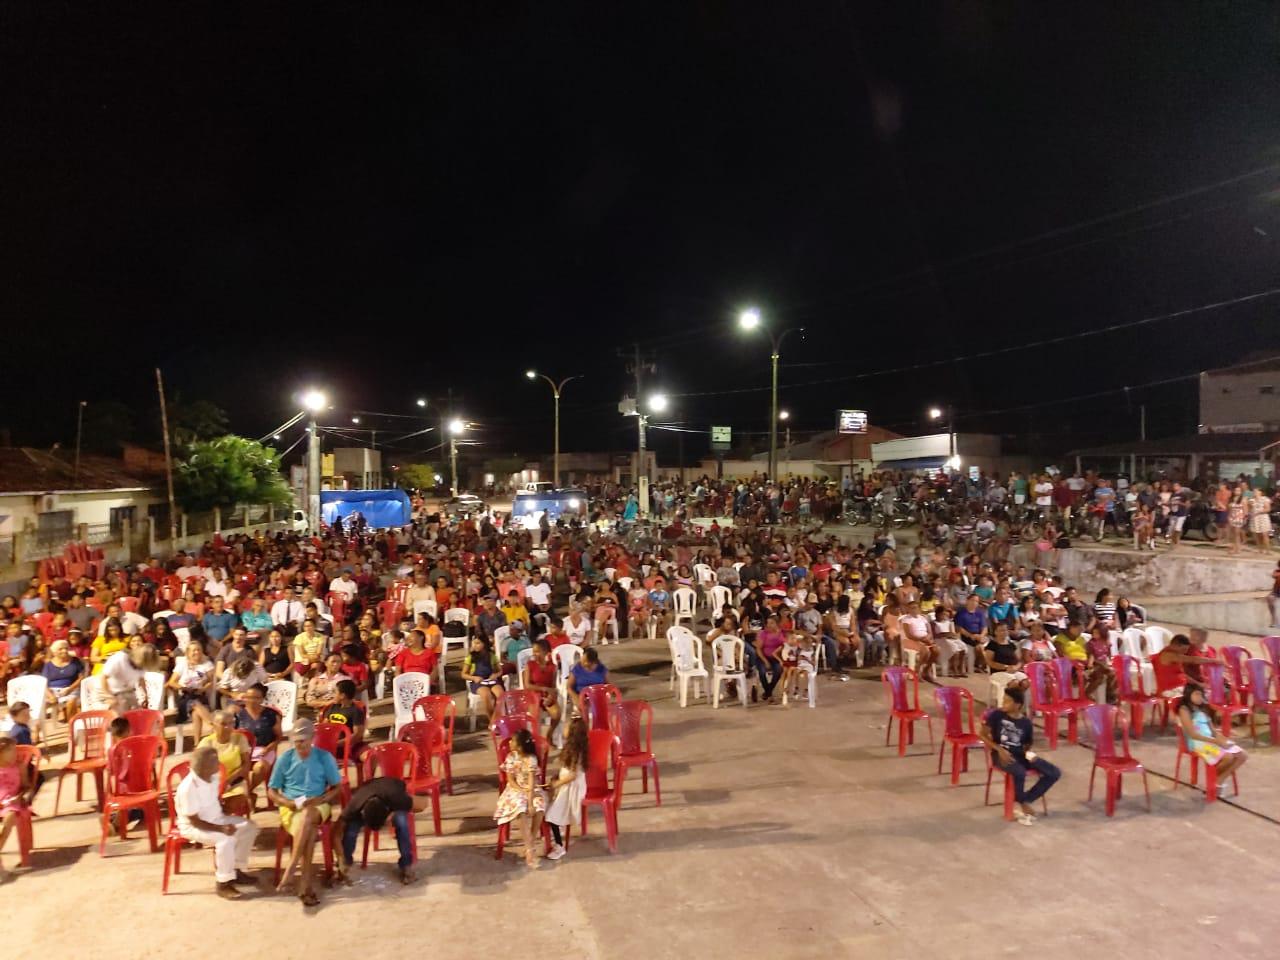 Prefeitura de Amapá promoveu evento em comemoração ao Dia dos Pais